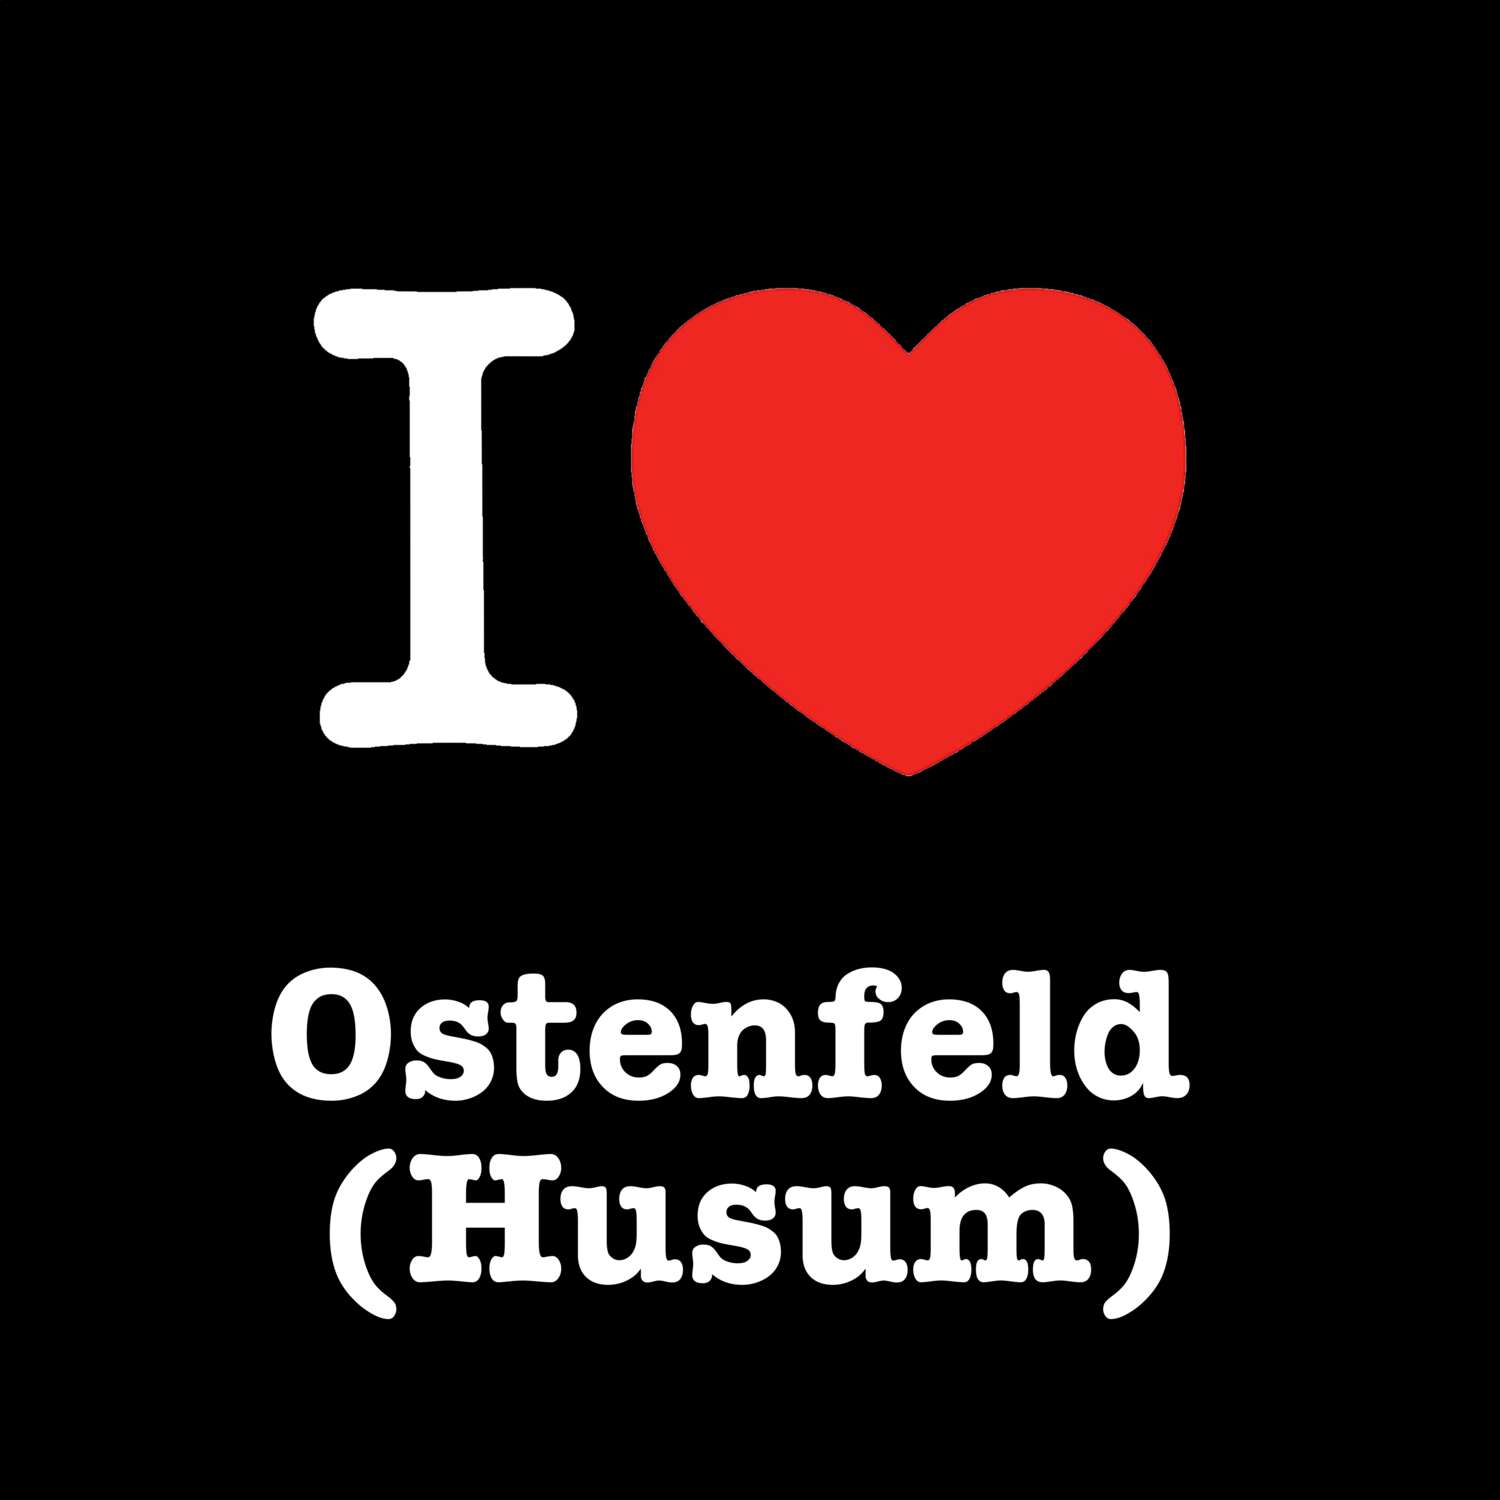 Ostenfeld (Husum) T-Shirt »I love«